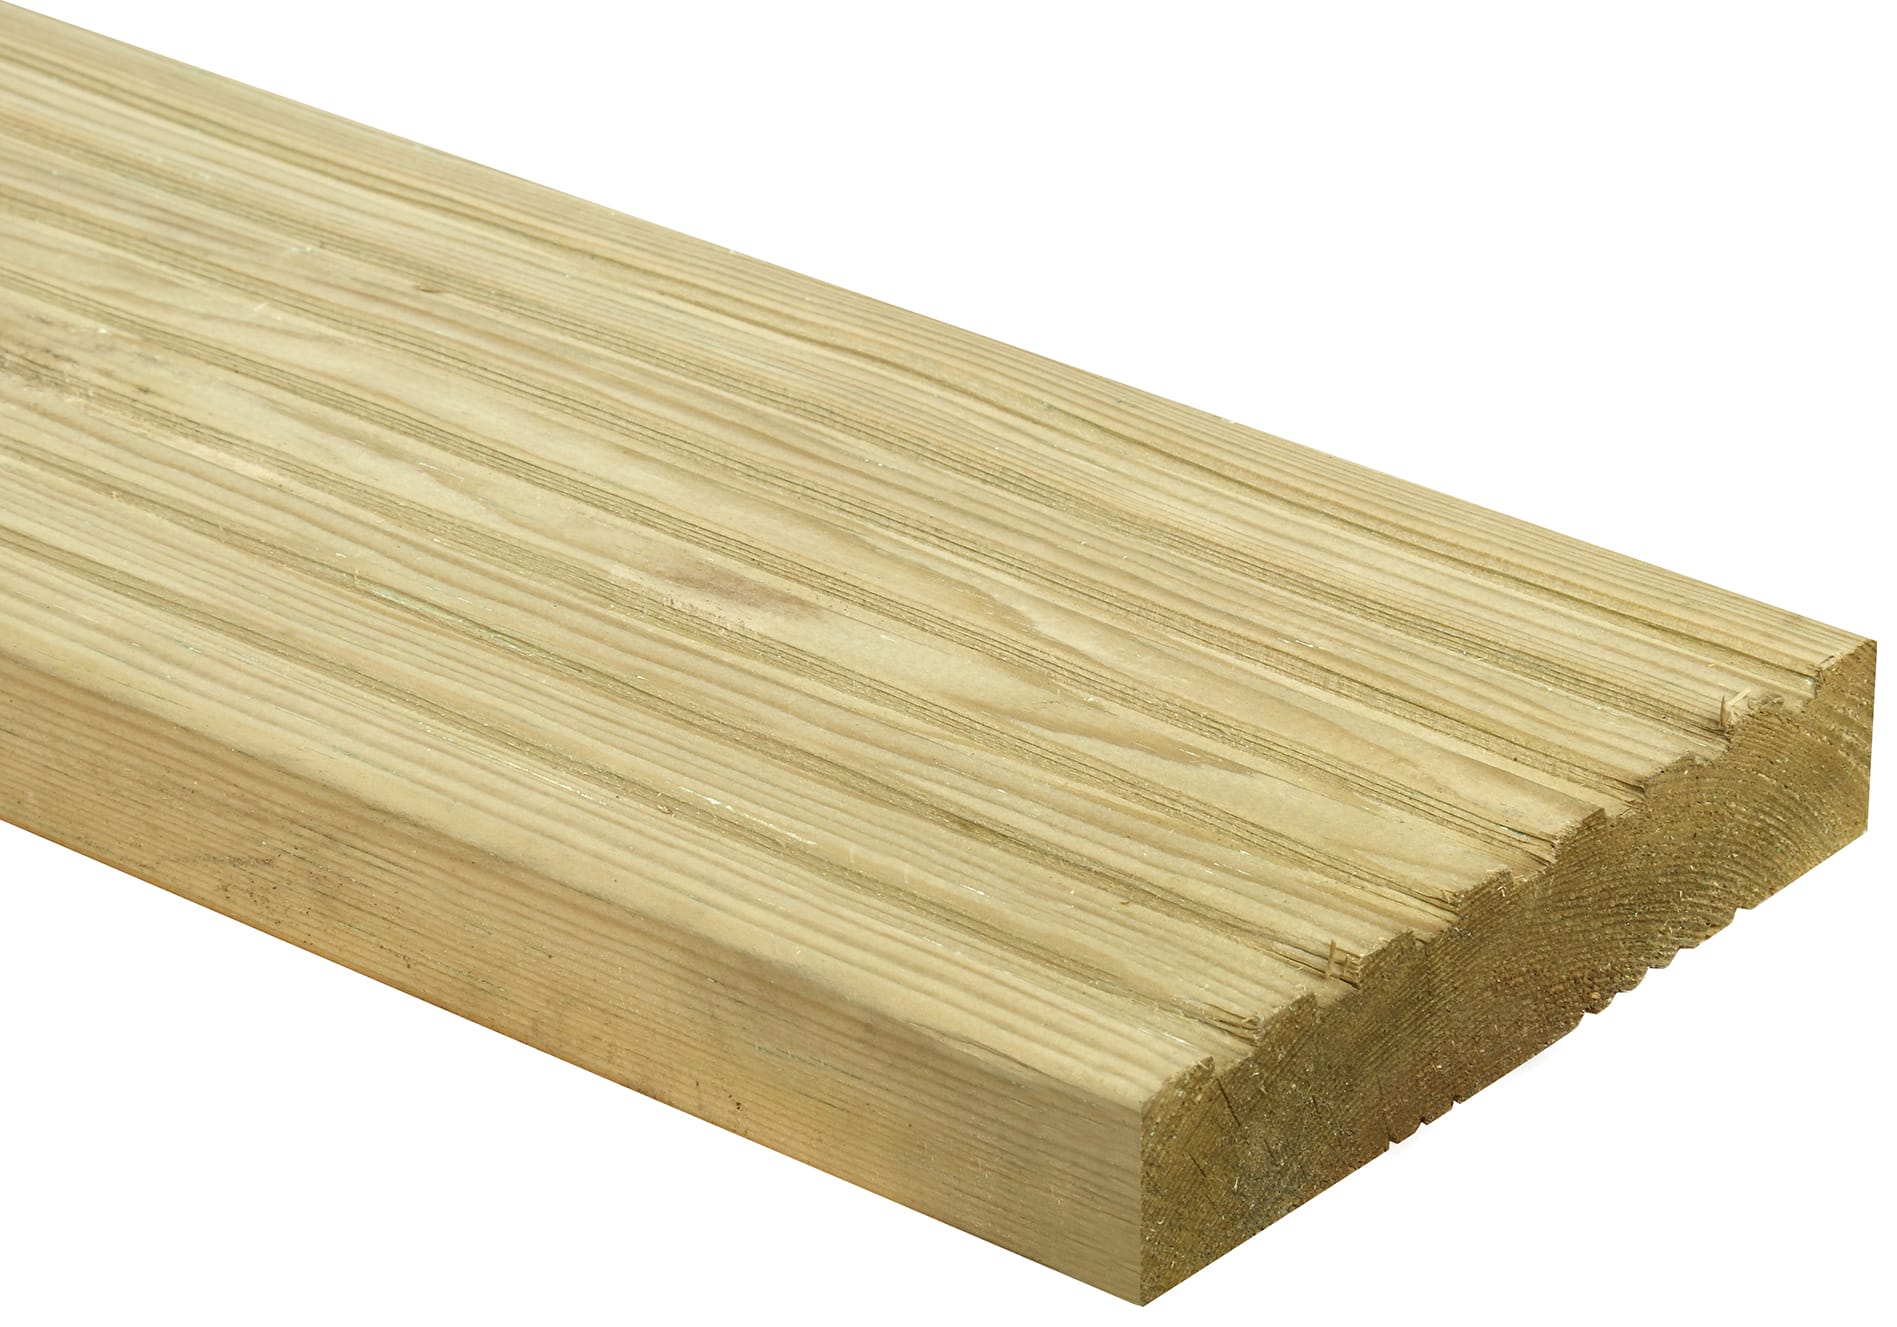 Wickes Premium Natural Pine Deck Board - 28